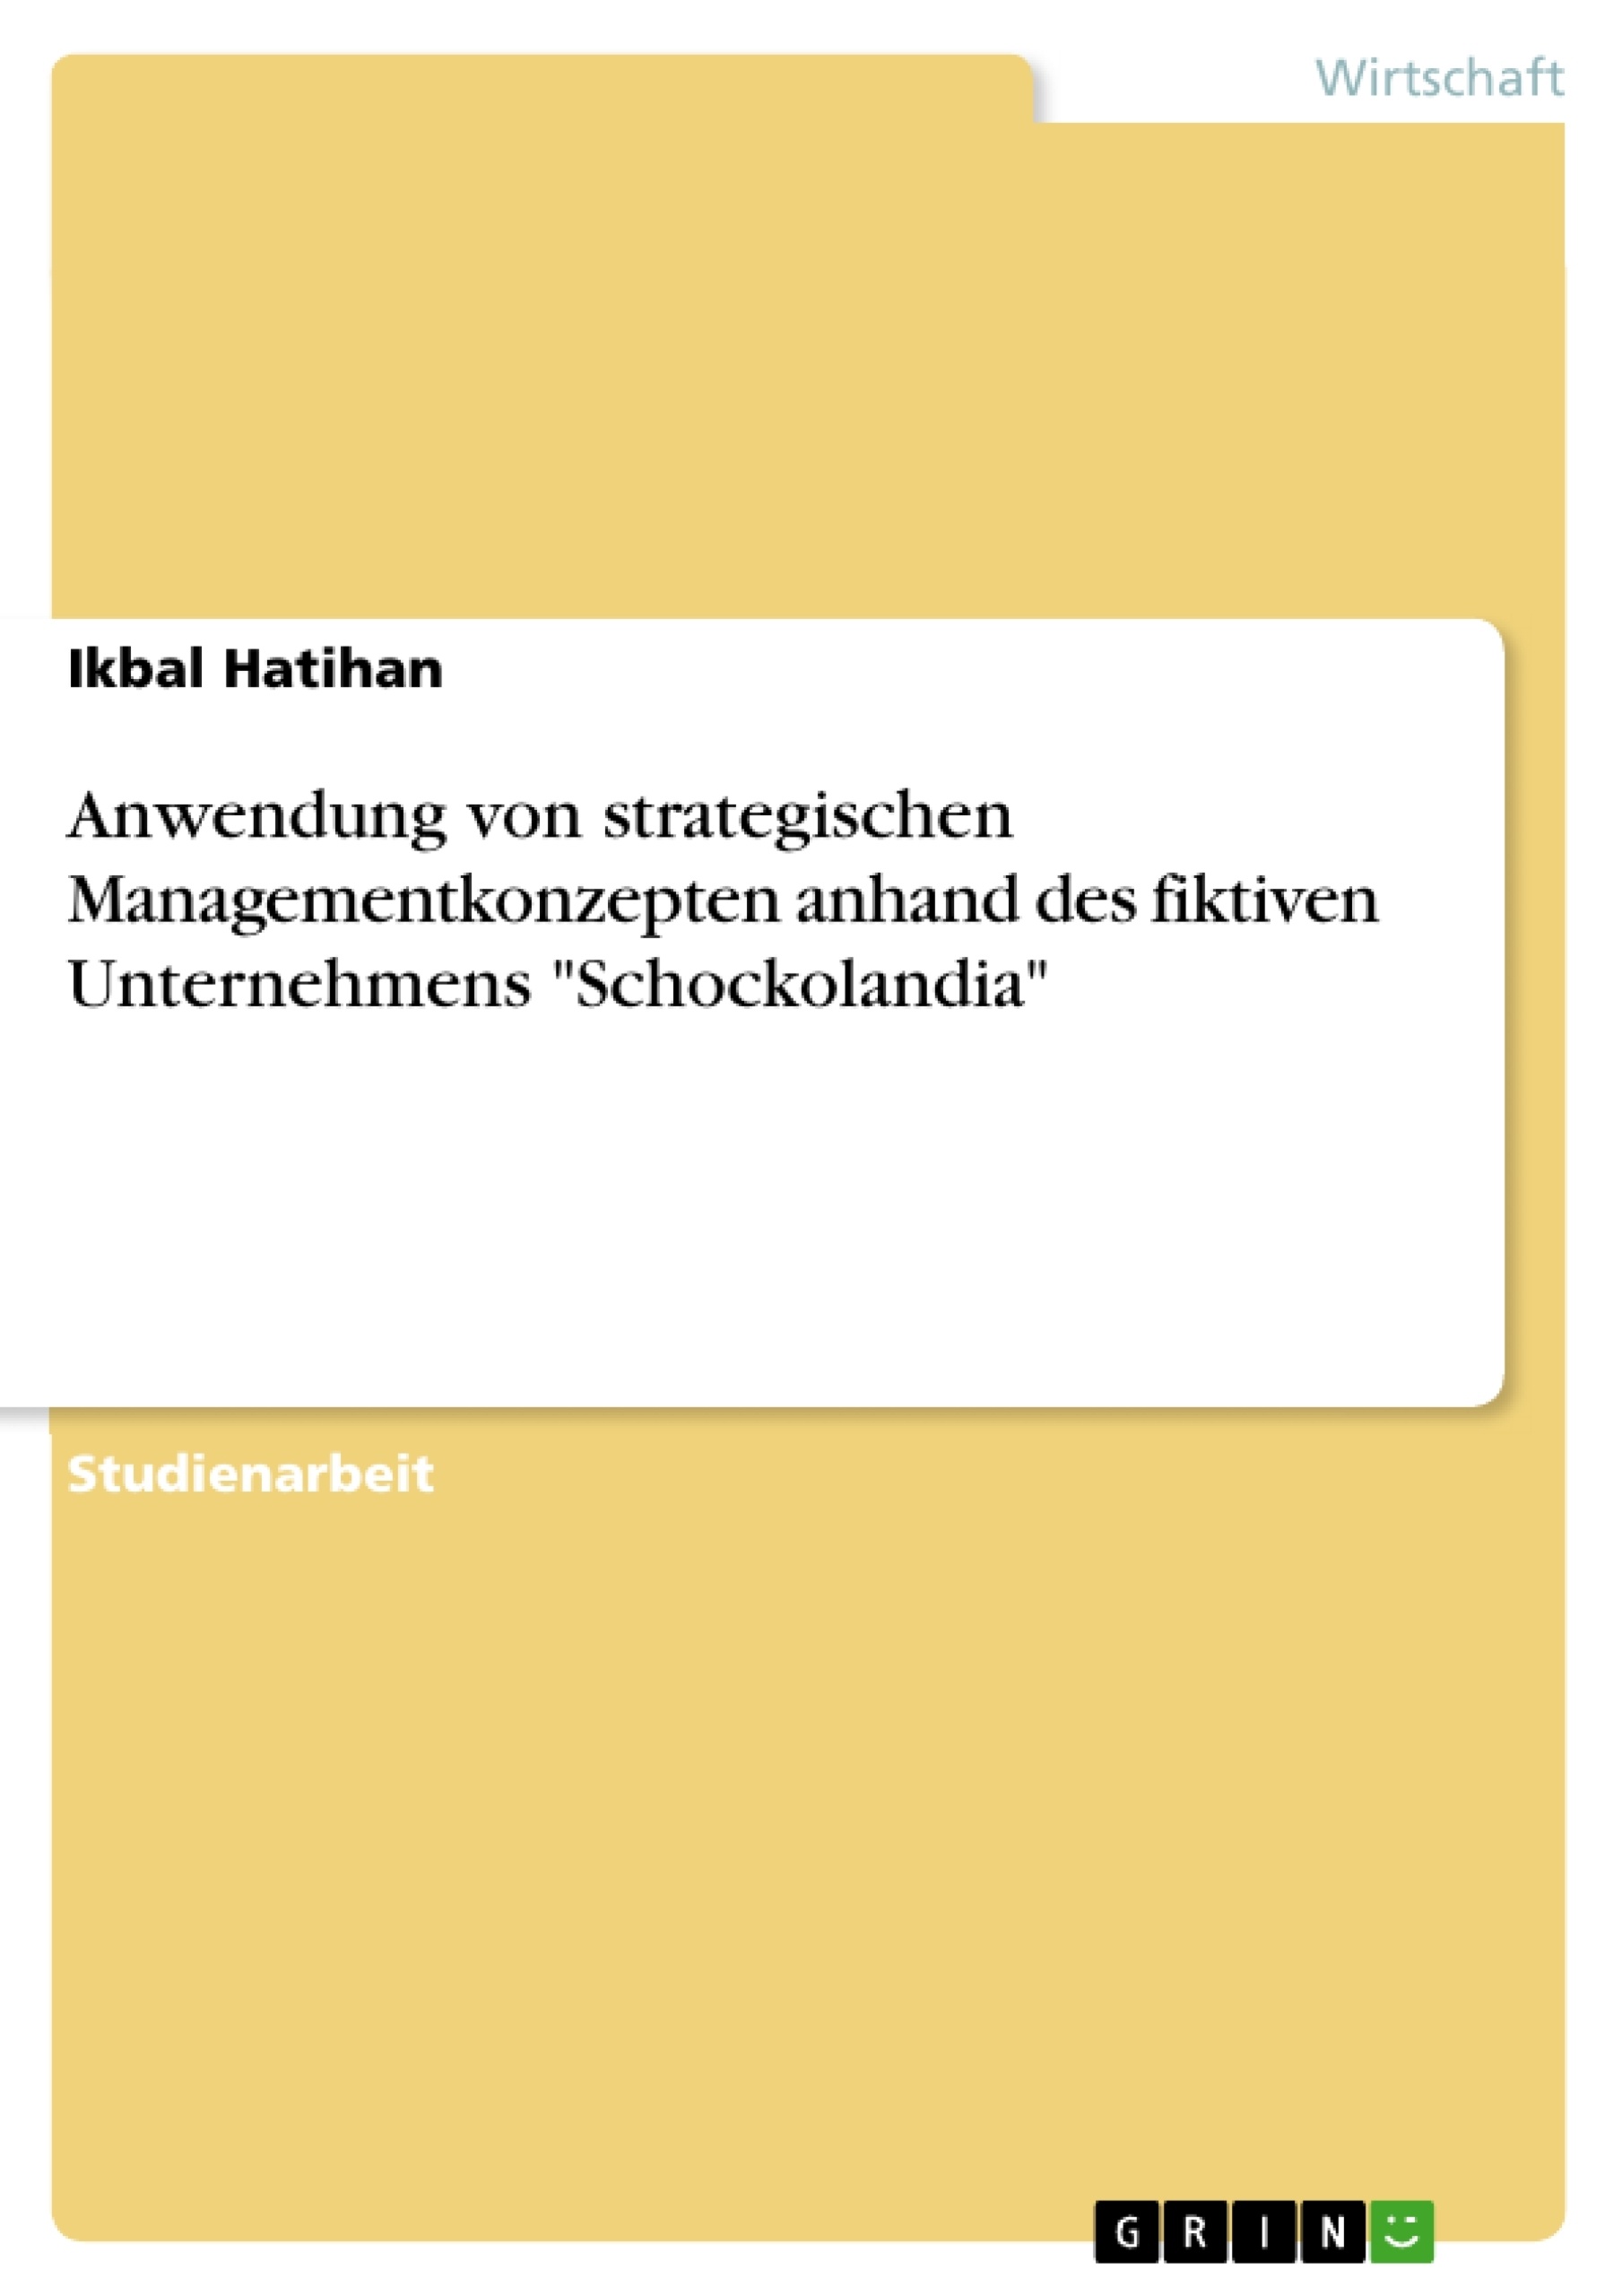 Title: Anwendung von strategischen Managementkonzepten anhand des fiktiven Unternehmens "Schockolandia"